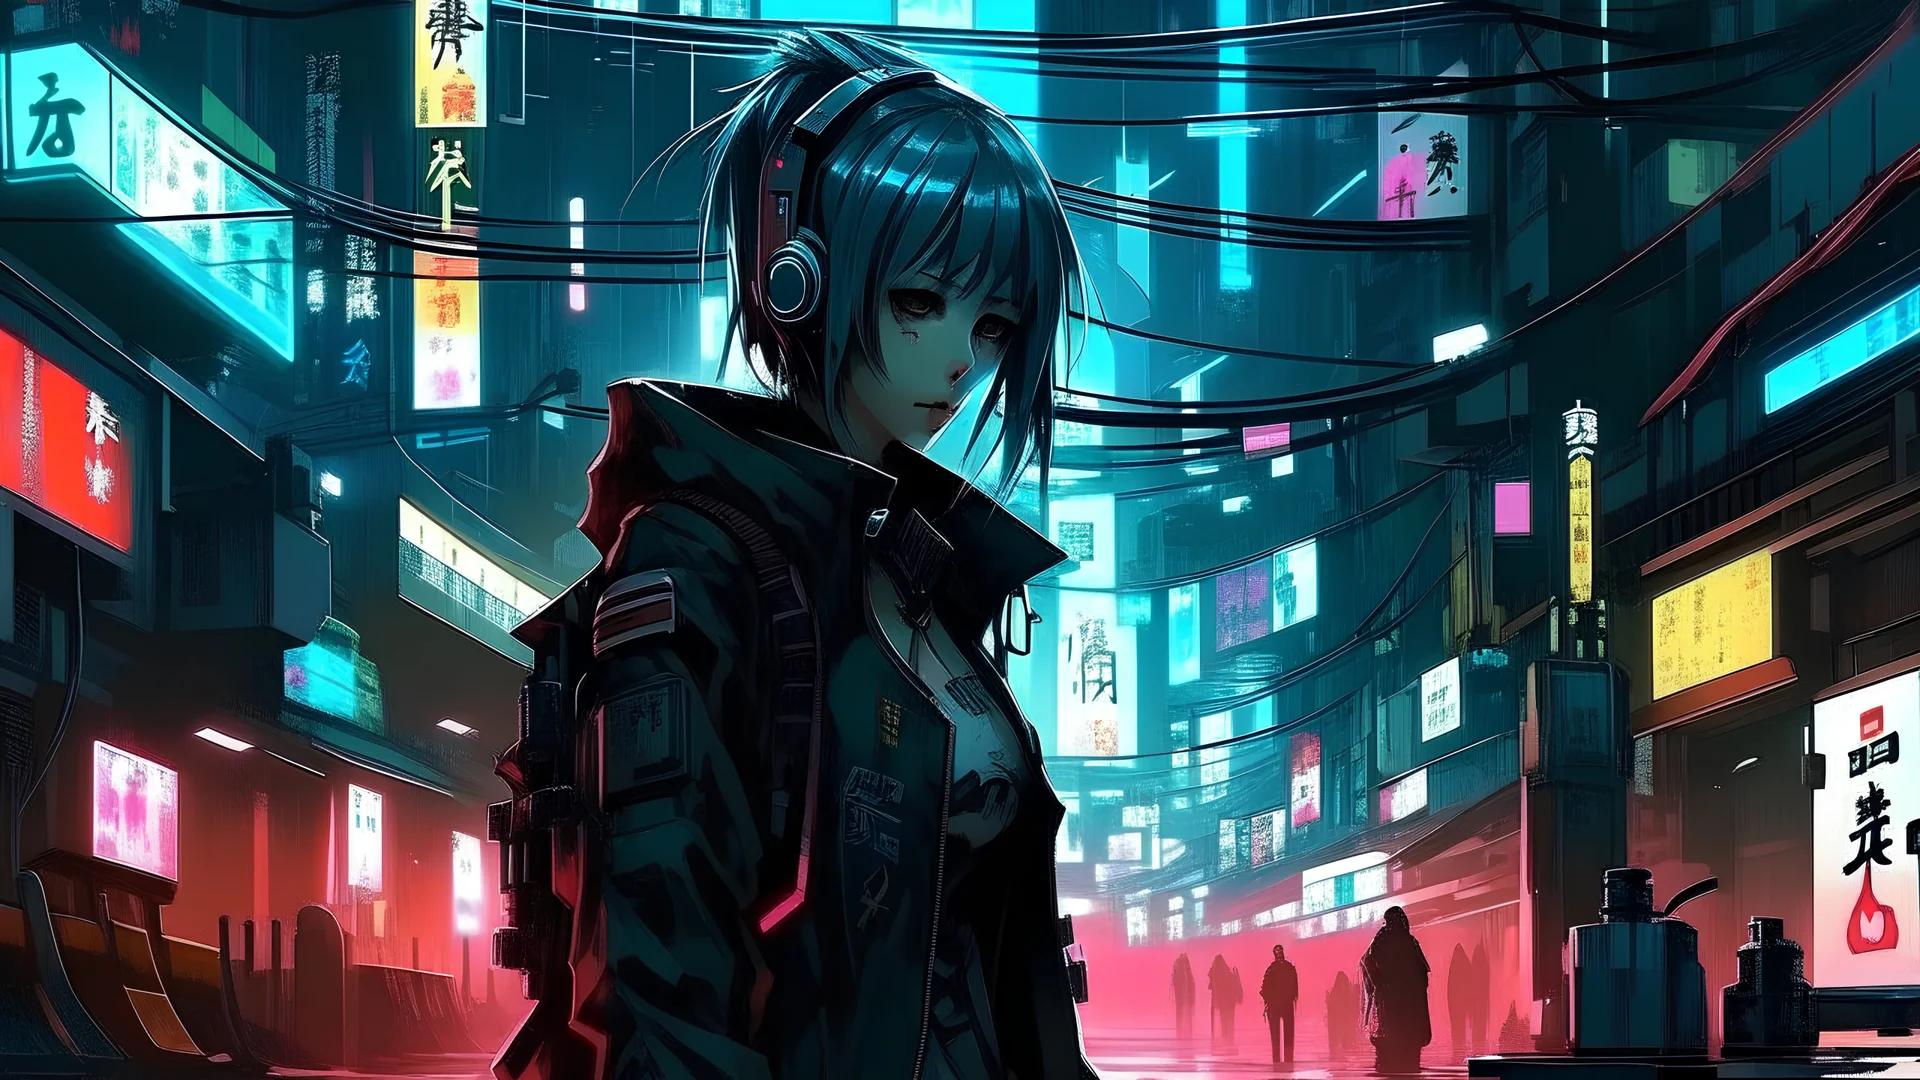 Cyberpunk Edgerunners Cyberpunk 2077 CD Projekt RED Trigger Anime Anime  Girls STUDiO MASSKET Netflix Wallpaper - Resolution:3840x2160 - ID:1344384  - wallha.com